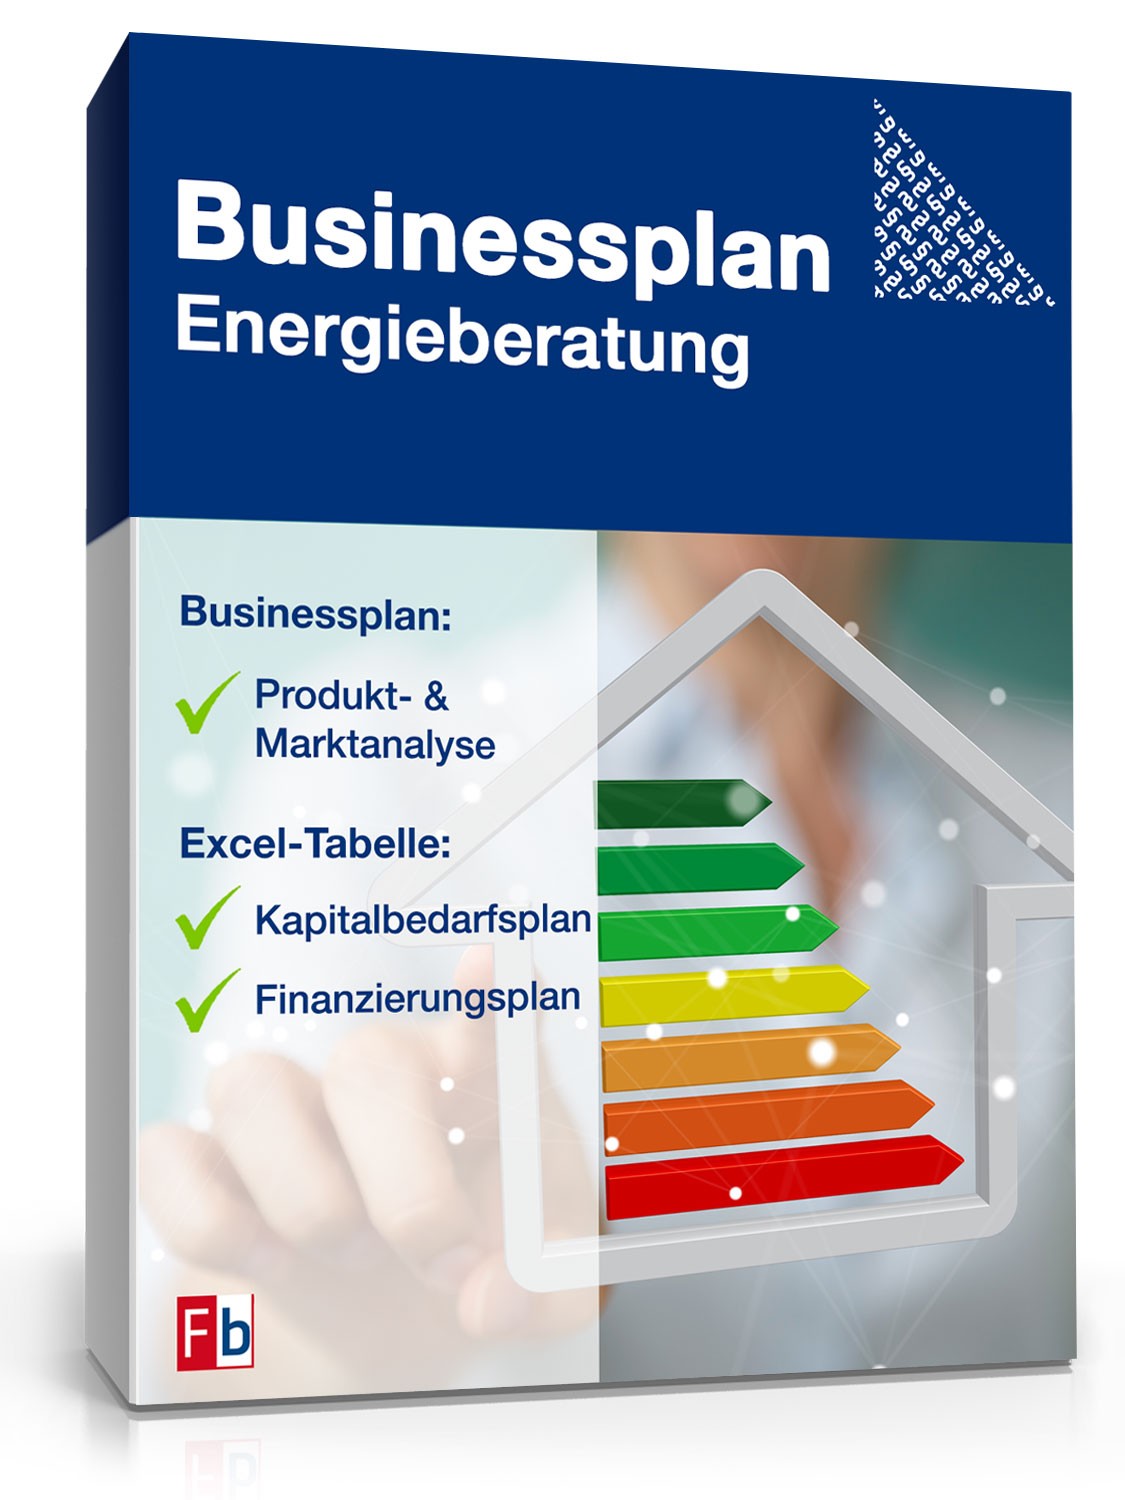 Hauptbild des Produkts: Businessplan Energieberatung